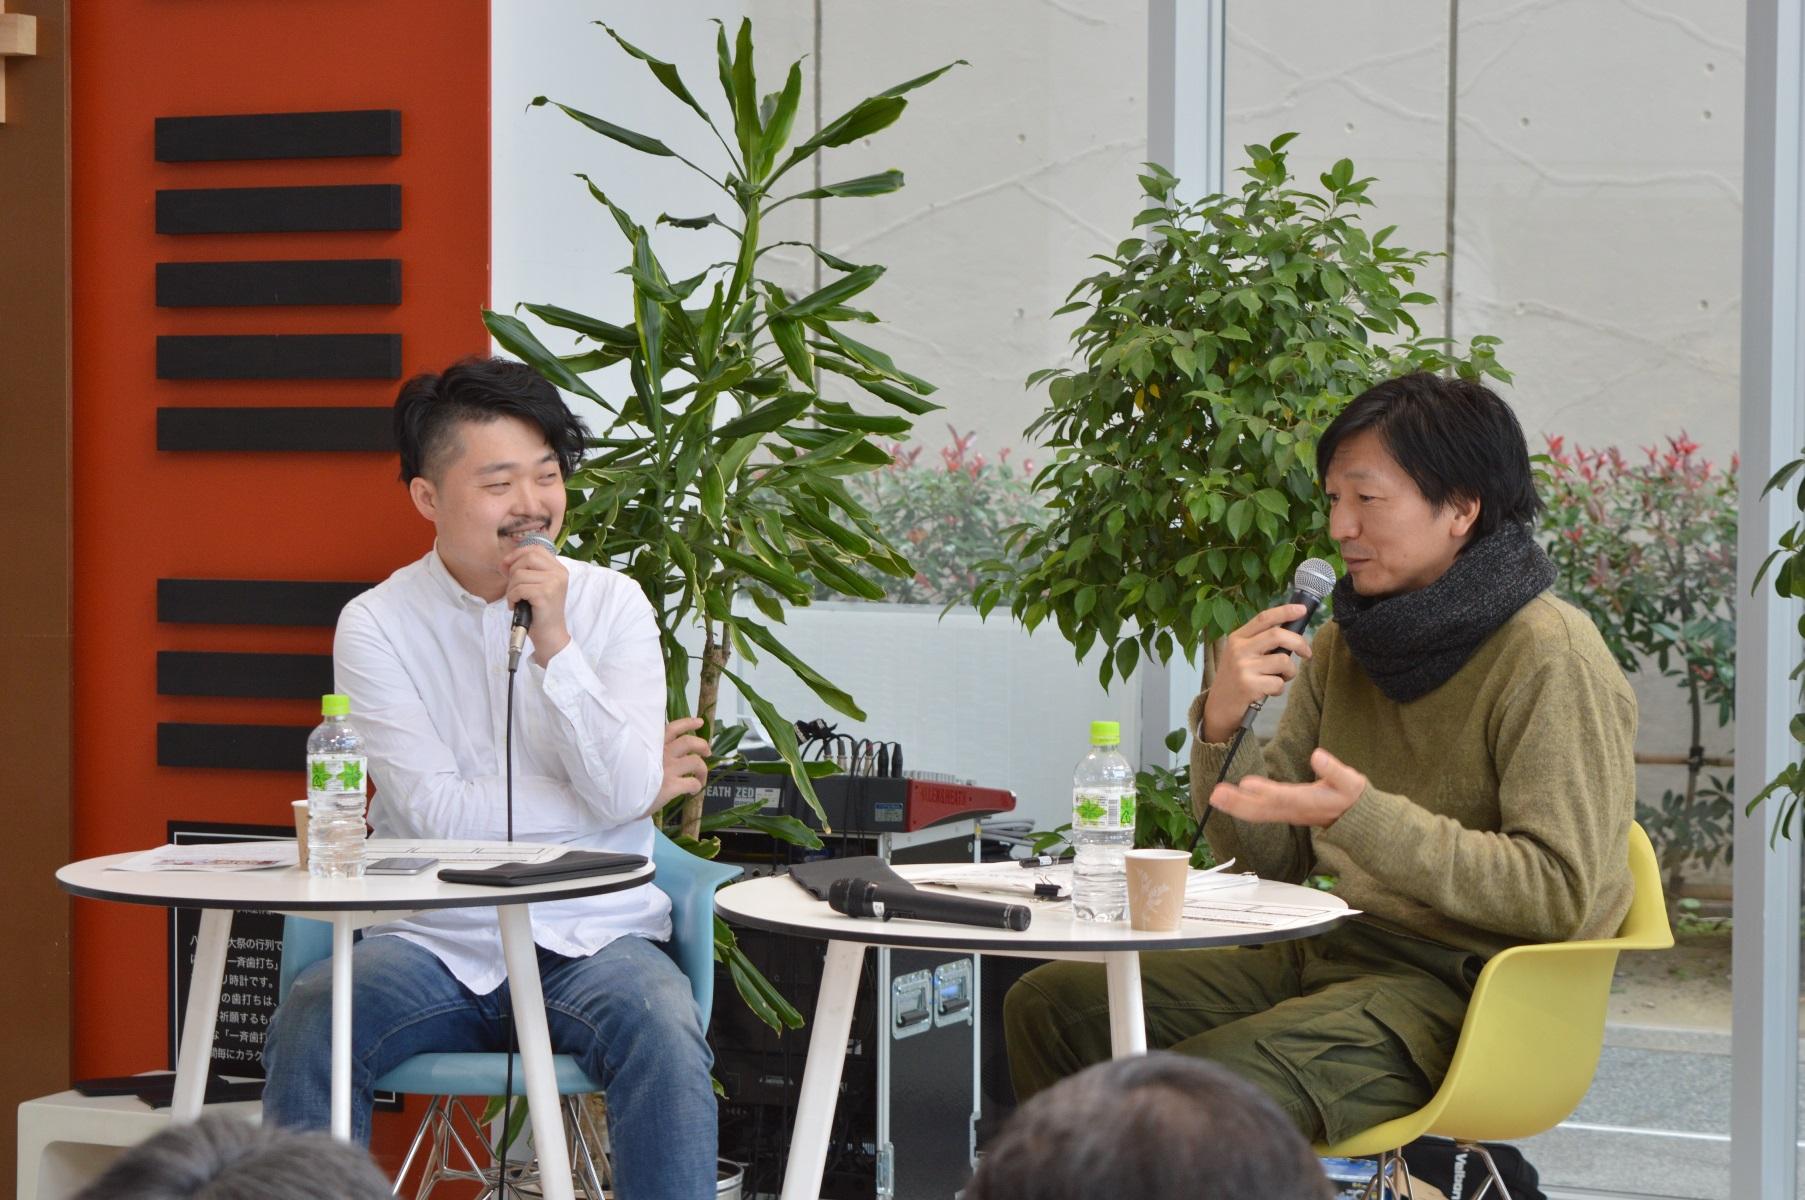 椅子に座り、マイクを持ち微笑みながらトークを行っている内沼 晋太郎さんとナカムラ クニオさんの写真